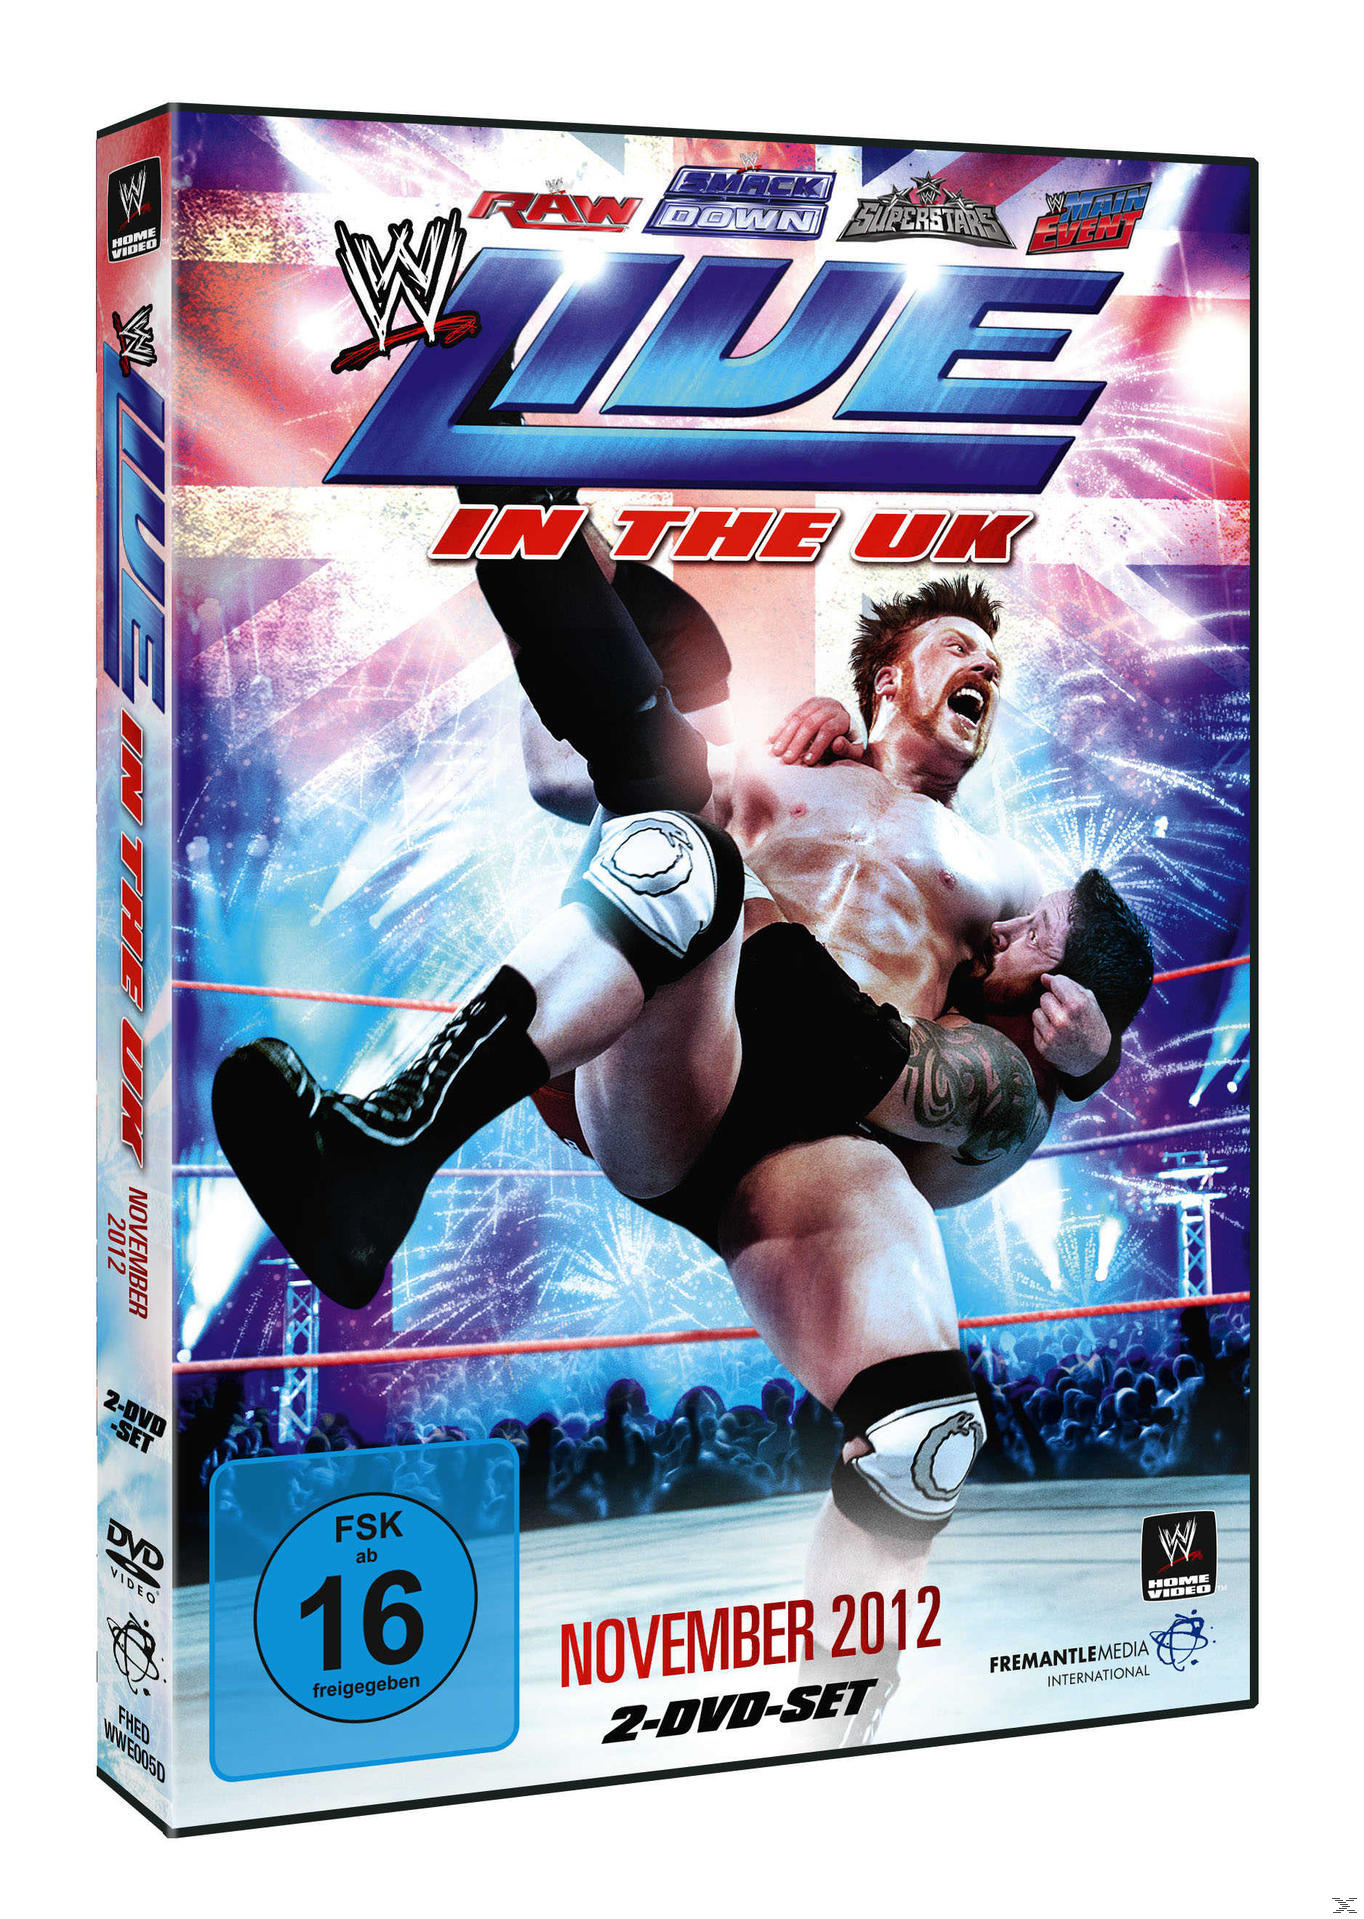 Live DVD November 2012 - the in UK